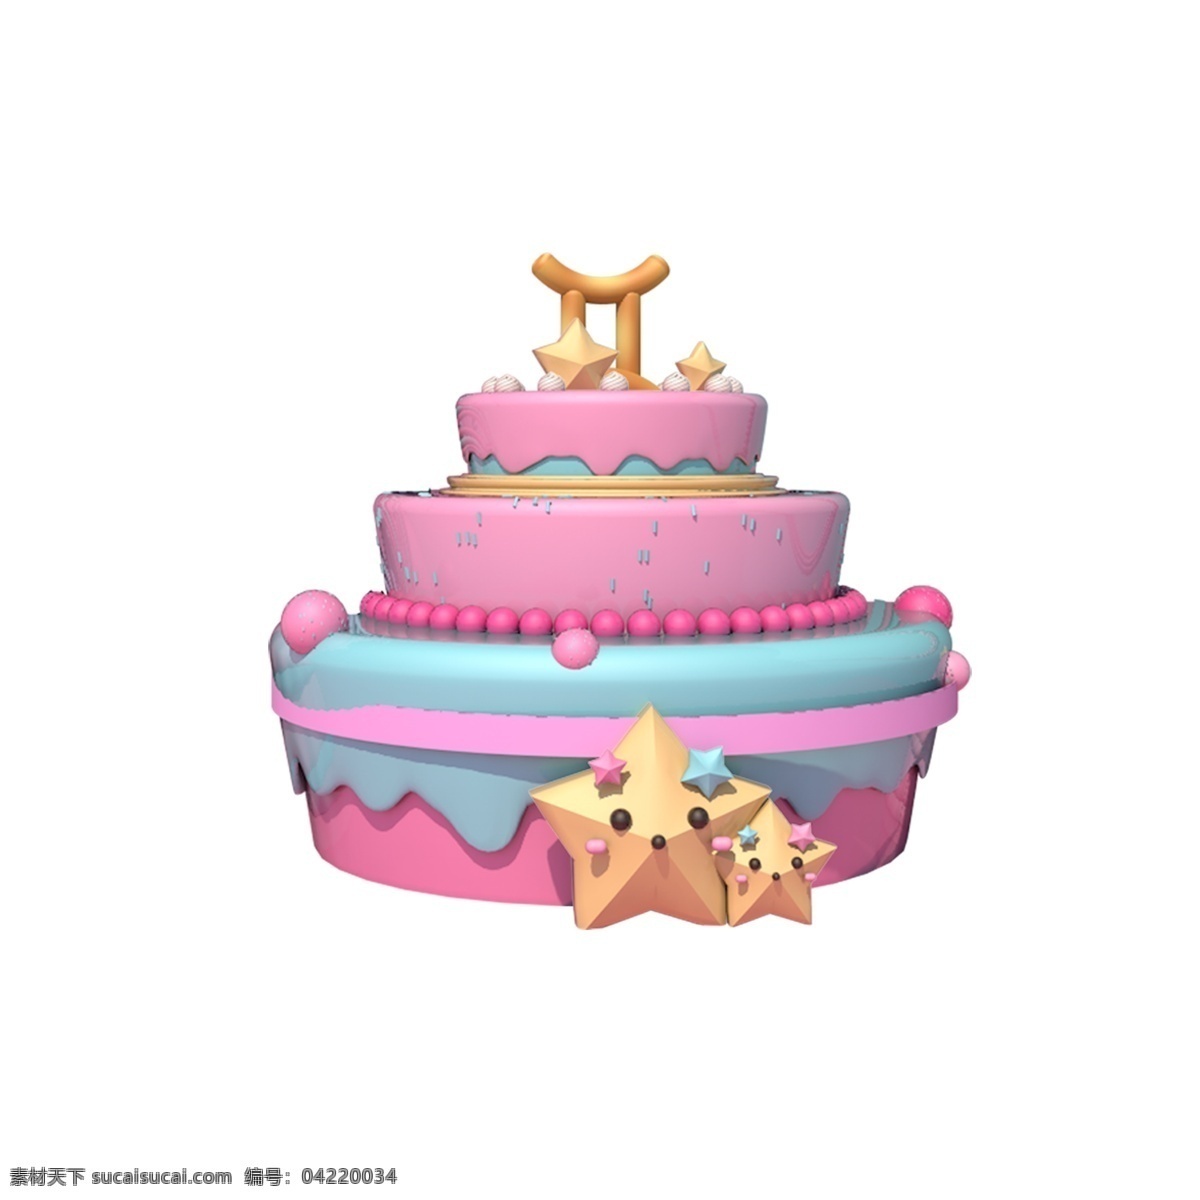 彩色 创意 蛋糕 食物 元素 装饰 纹理 美食 真实 味道 金色五角星 浪漫 生日蛋糕 甜食